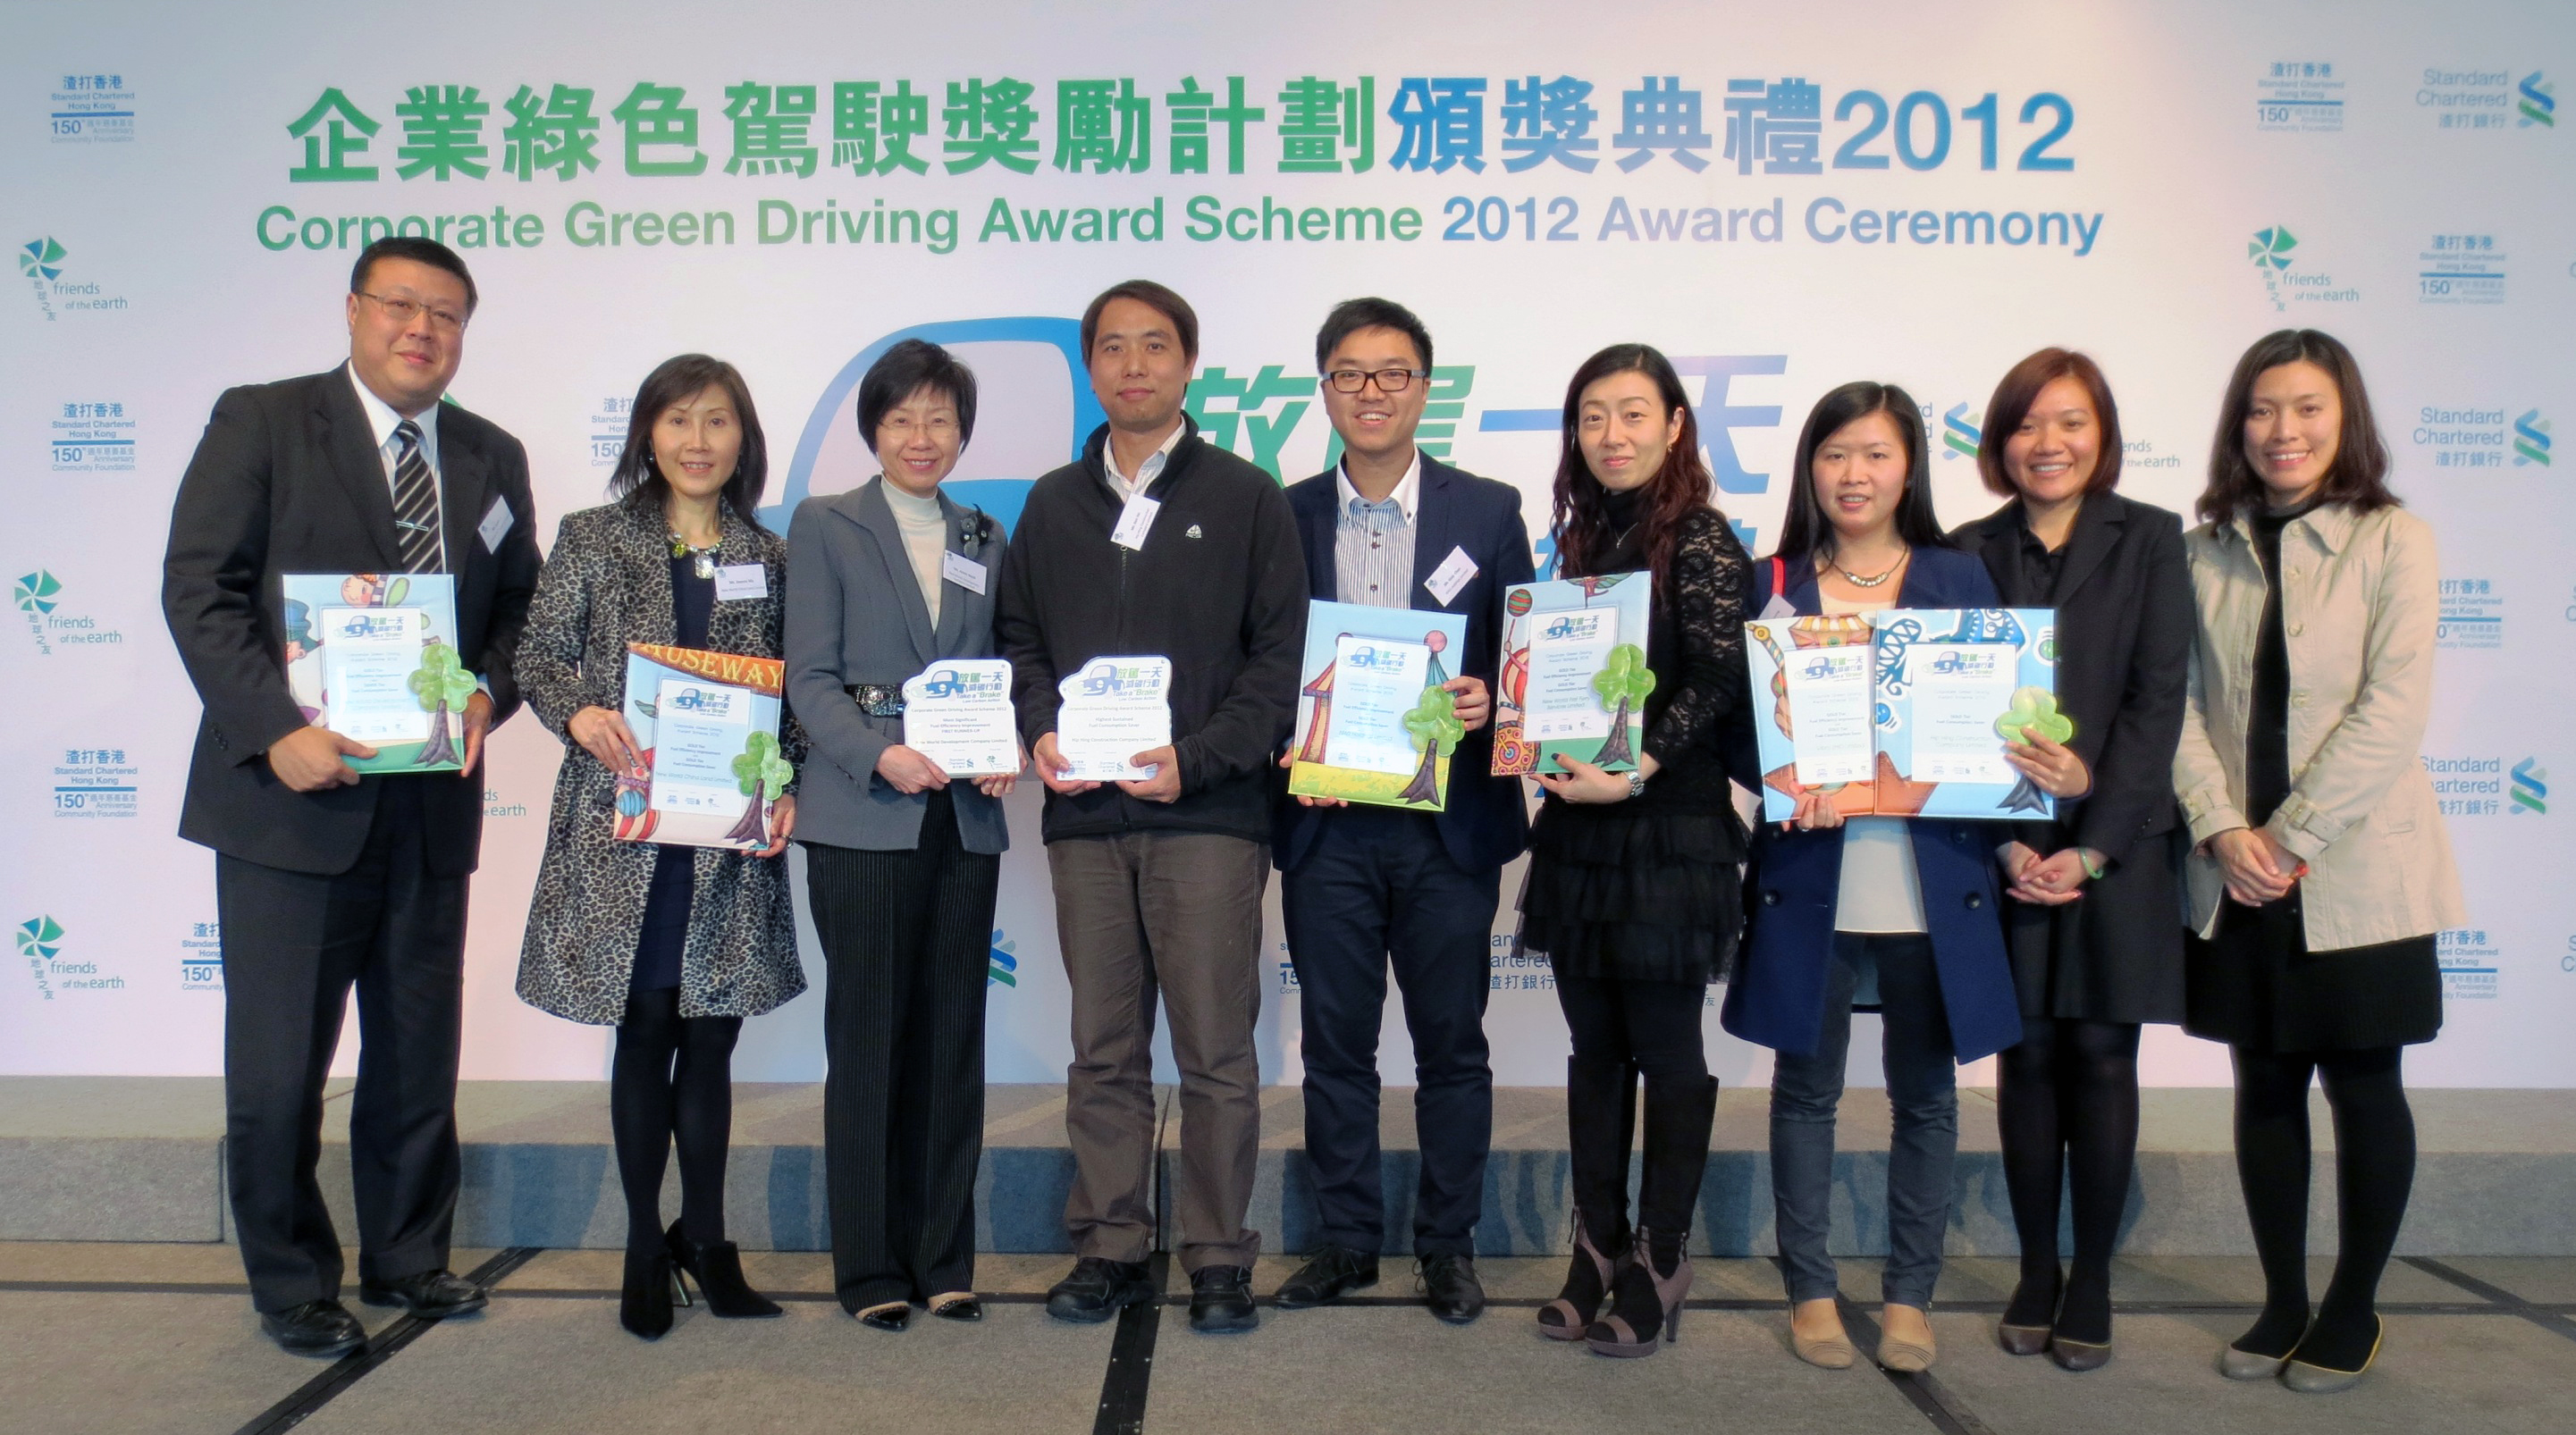 新创建集团荣获多个绿色驾驶大奖 贯彻环保理念